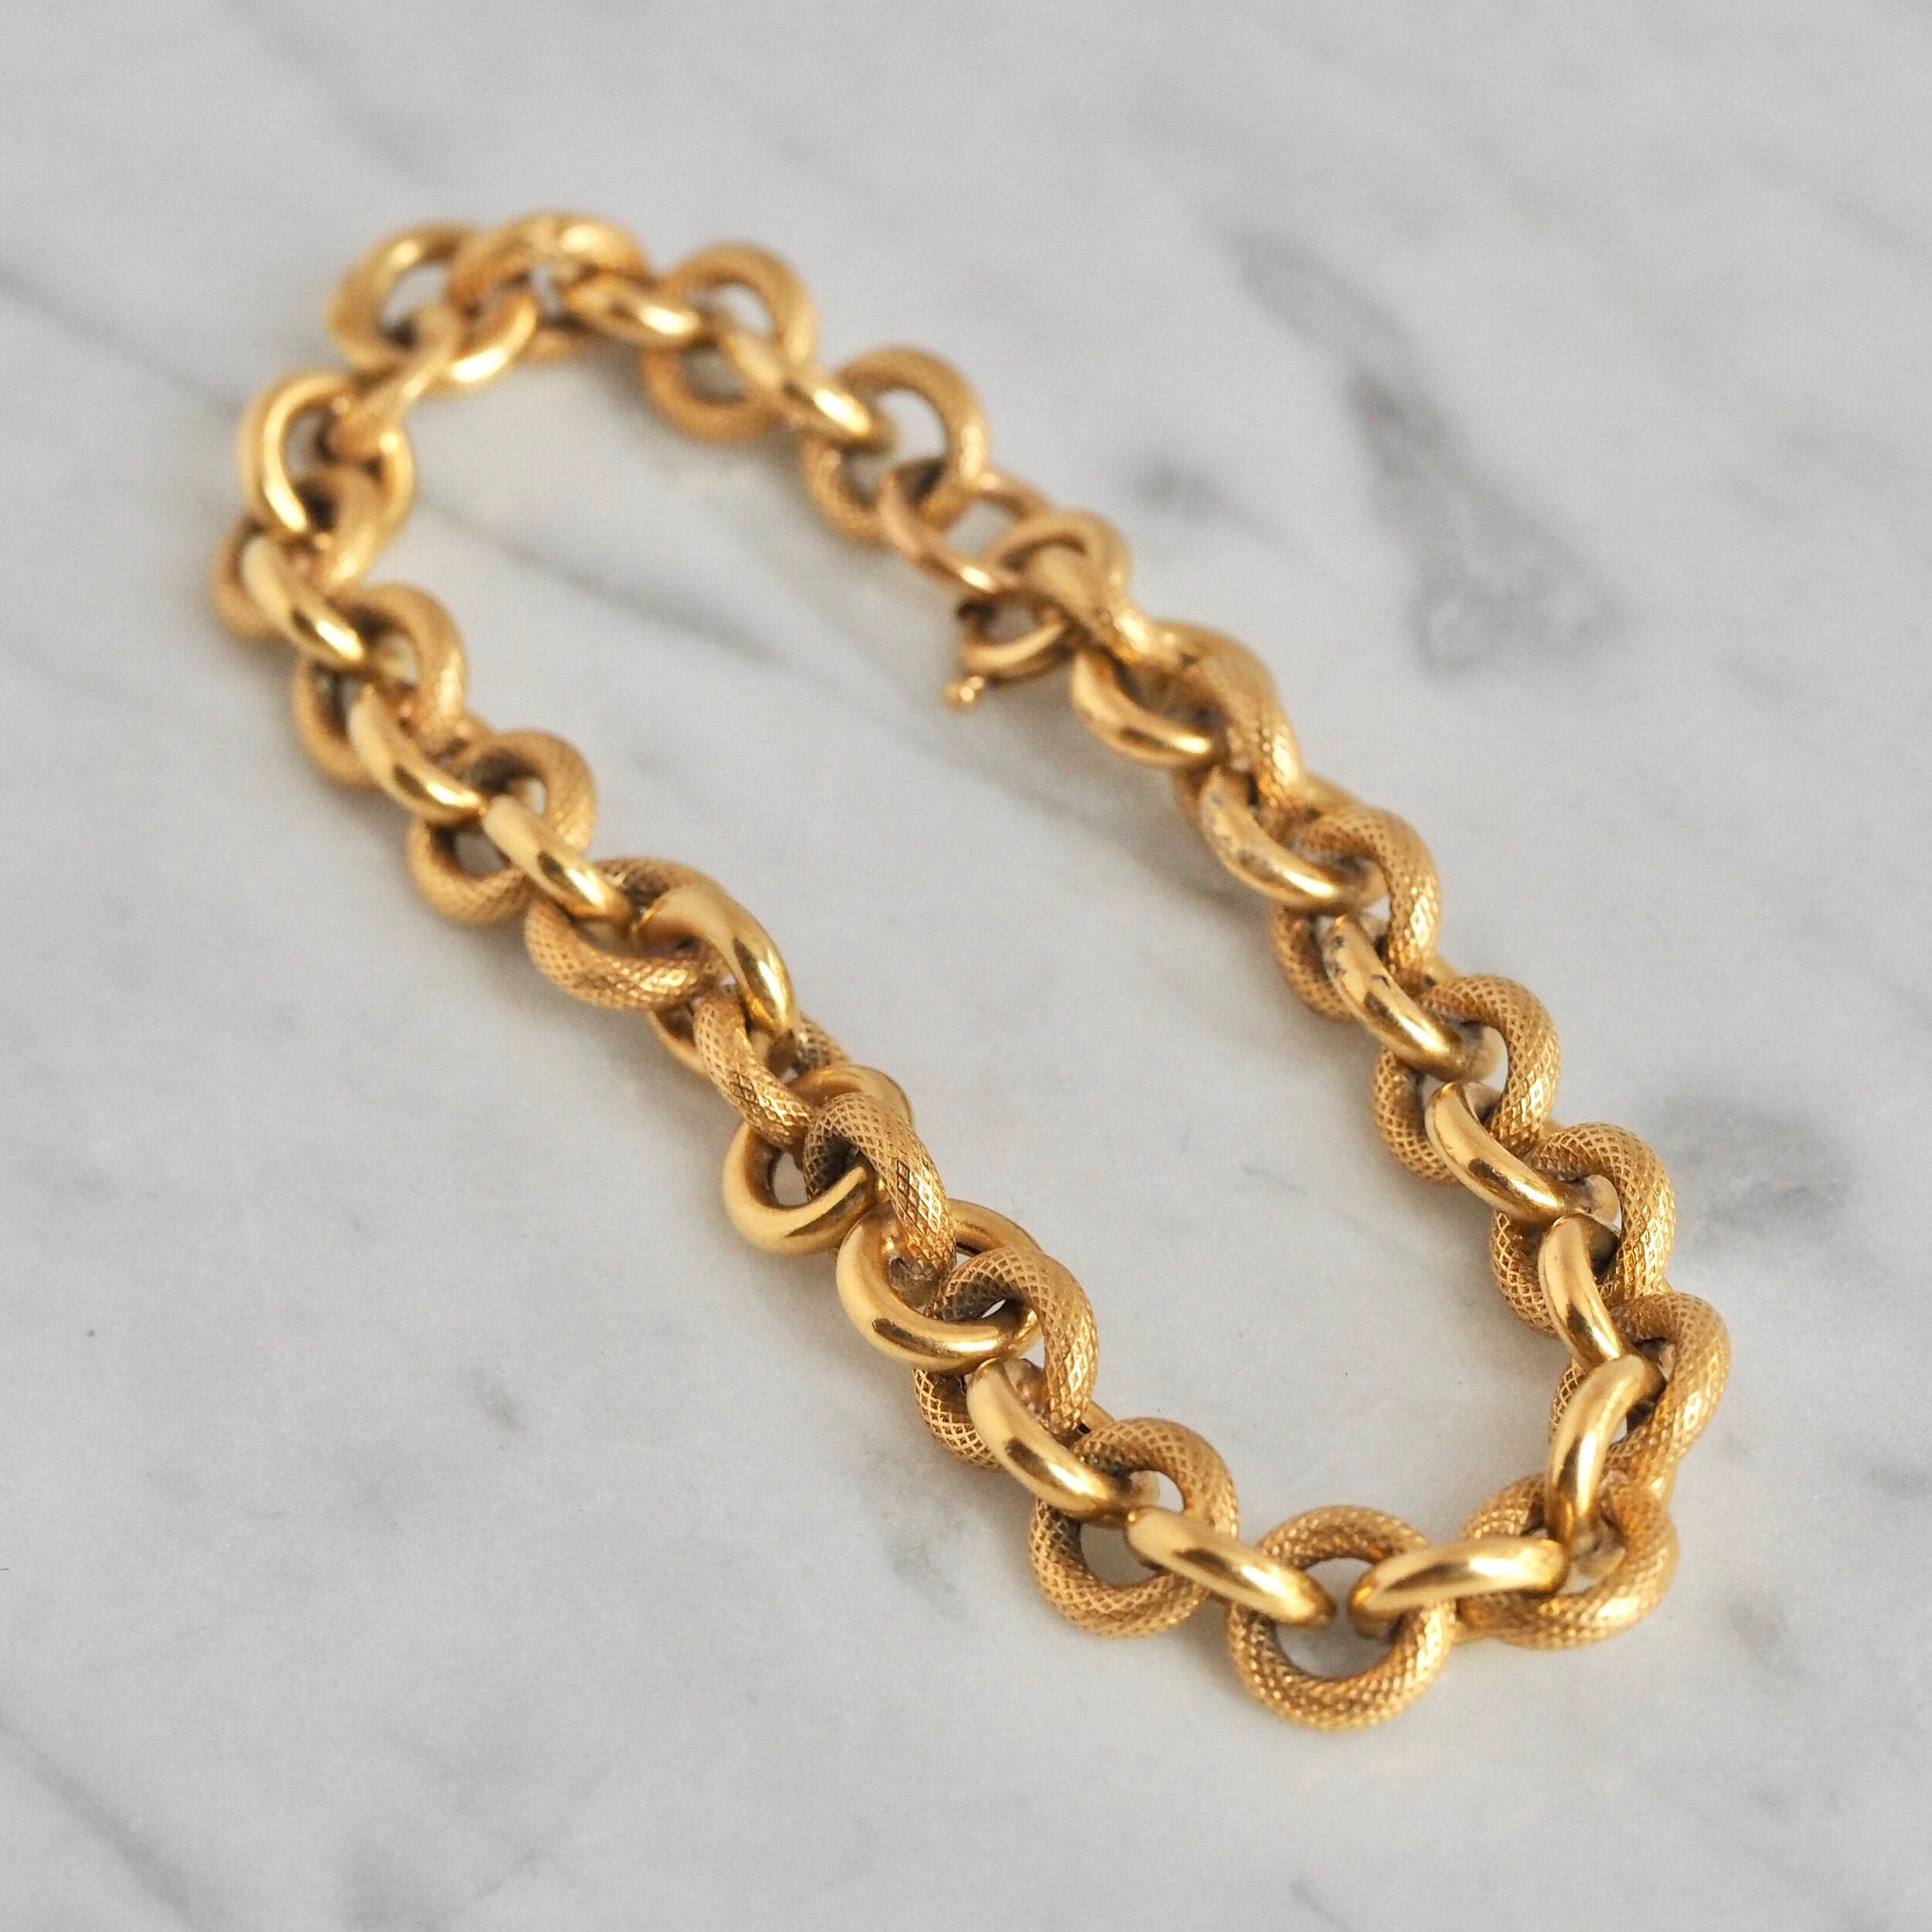 Made in Italy 4.6mm Link Bracelet in 14K Gold - 7.5